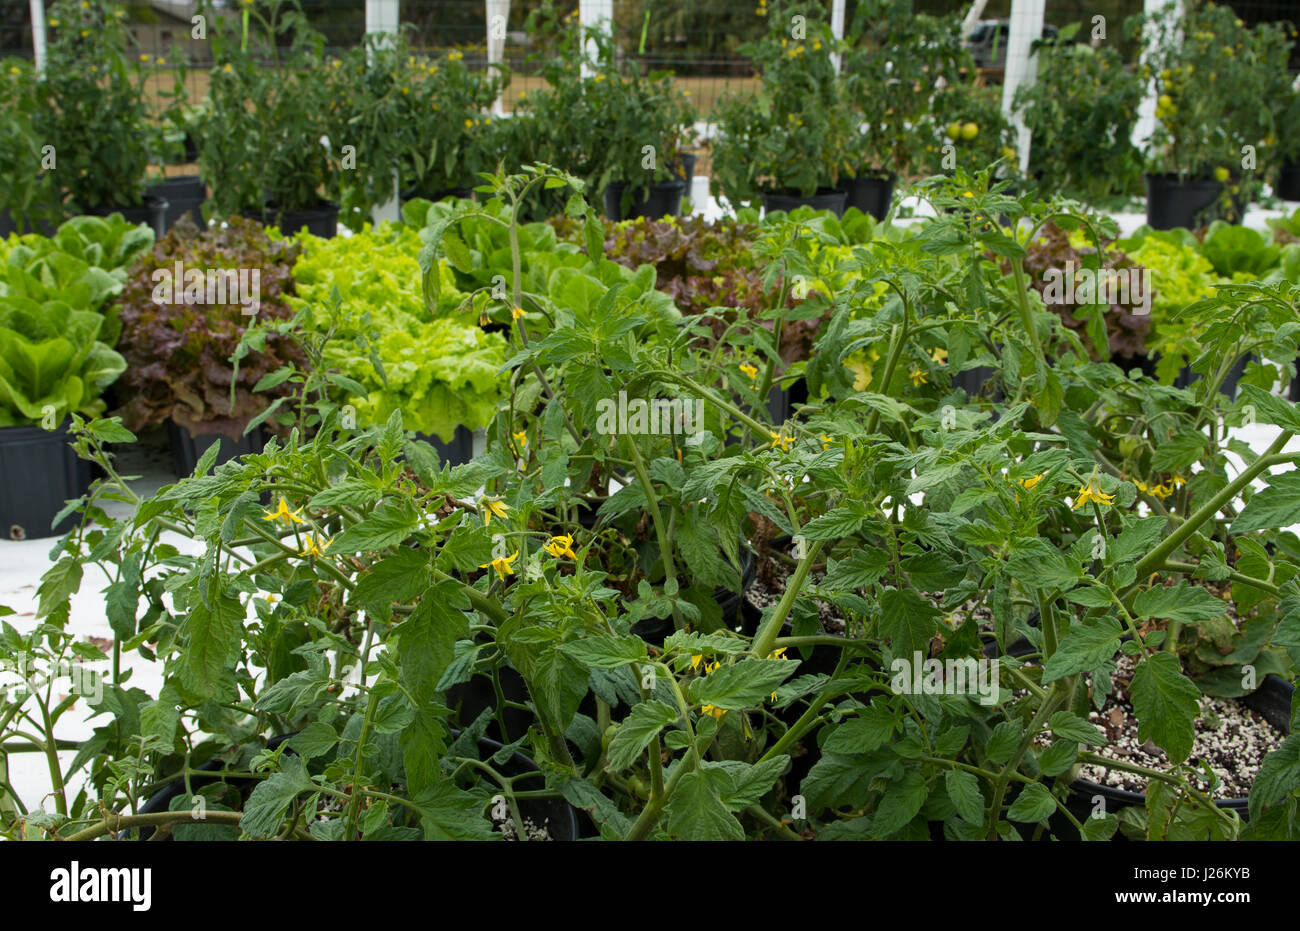 Orgánica de la Florida Central casa jardín con plantas y hortalizas en el patio para comer una dieta sana y cooperativa agraria Foto de stock